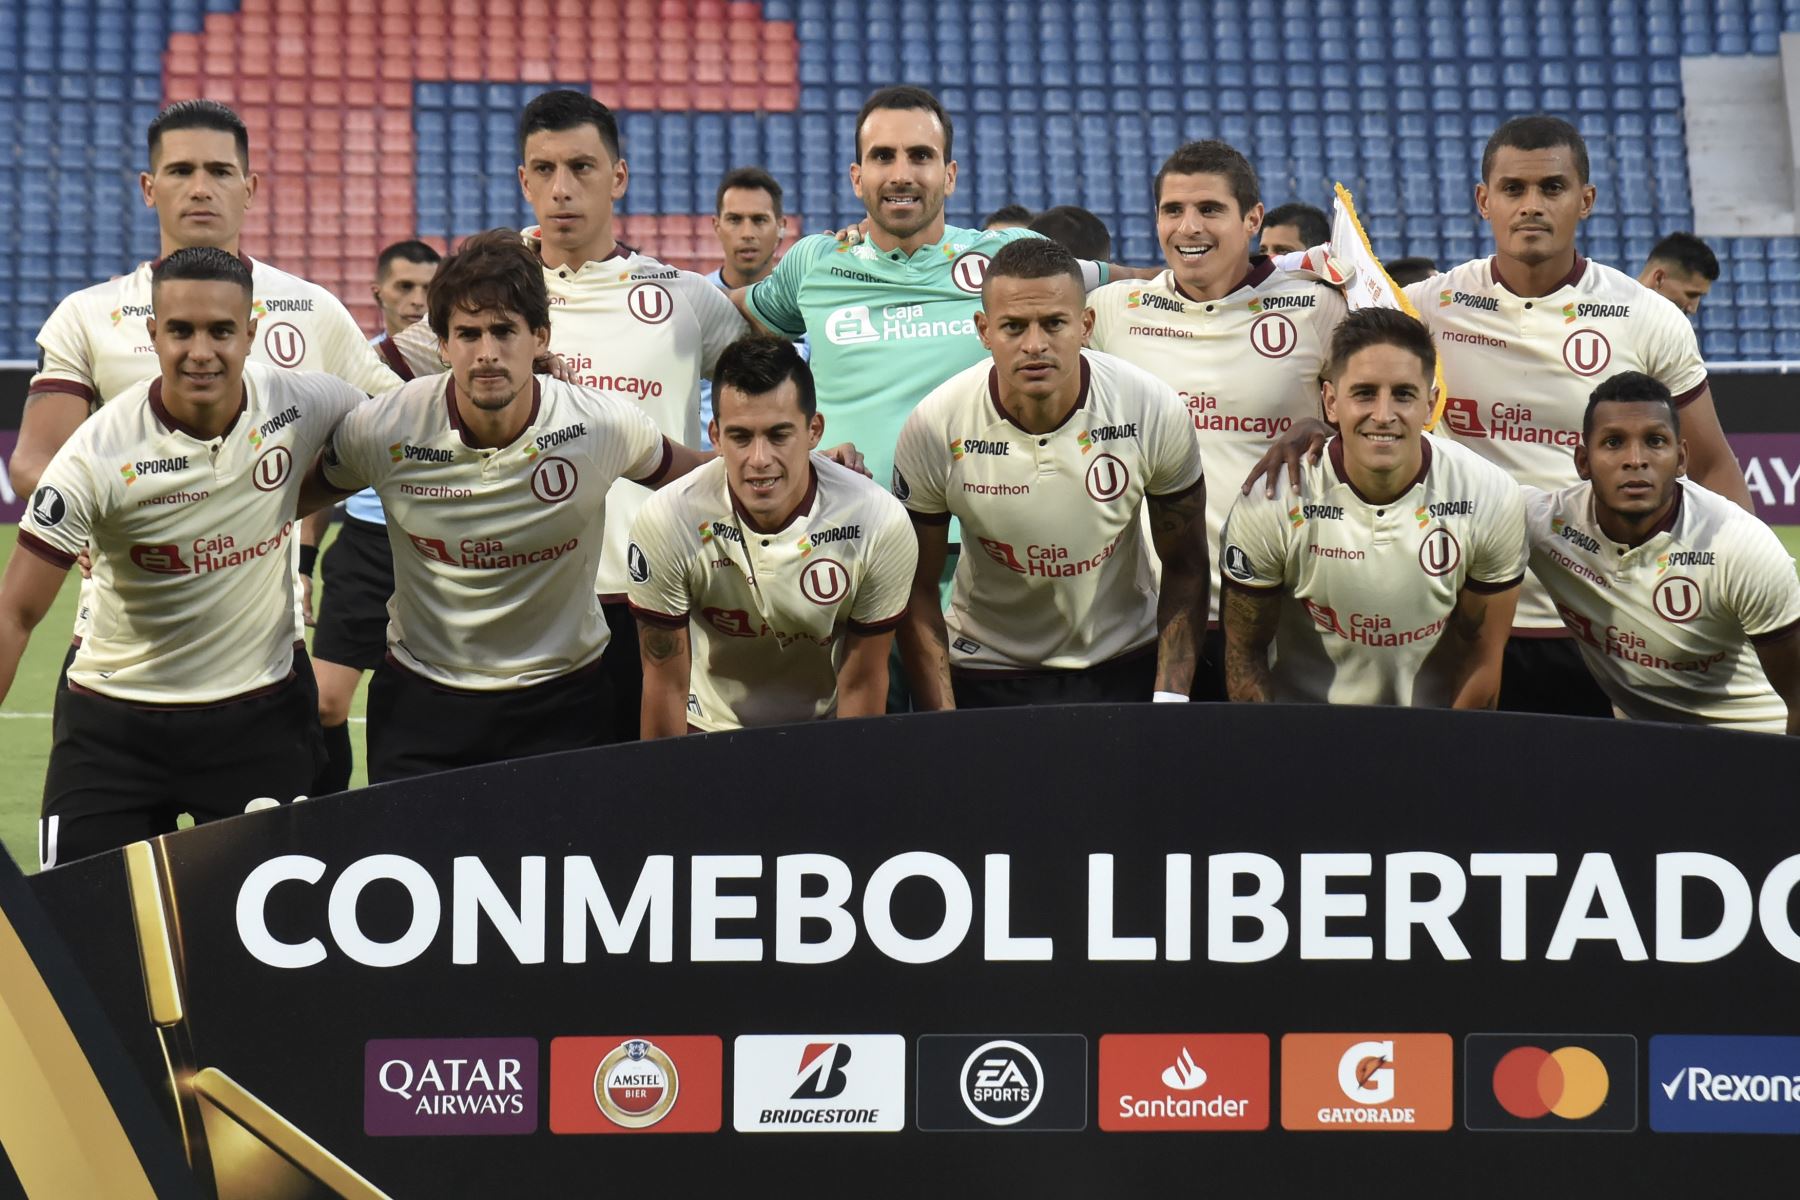 Los jugadores de Universitarios de Perú posan antes de su partido de fútbol de la Copa Libertadores contra el Cerro Porteño de Paraguay en el estadio Pablo Rojas.
Foto: AFP